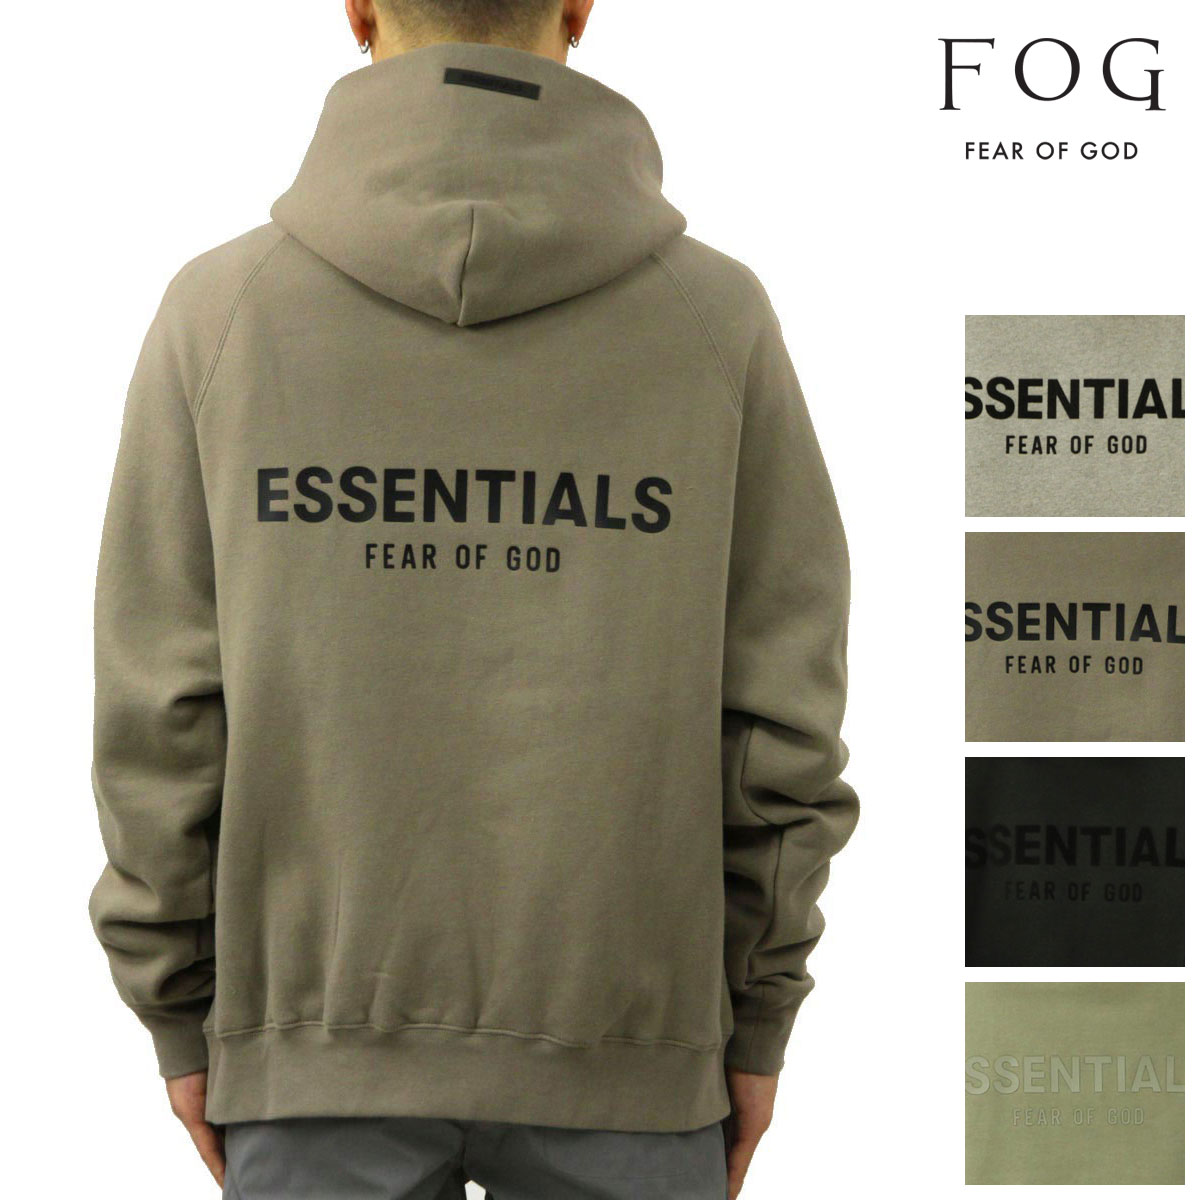 【ボーナスストア 誰でも+5% 4/7 0:00〜4/7 23:59】 フィアオブゴッド fog essentials パーカー メンズ 正規品  FEAR OF GOD エッセンシャルズ ロゴ FOG - F